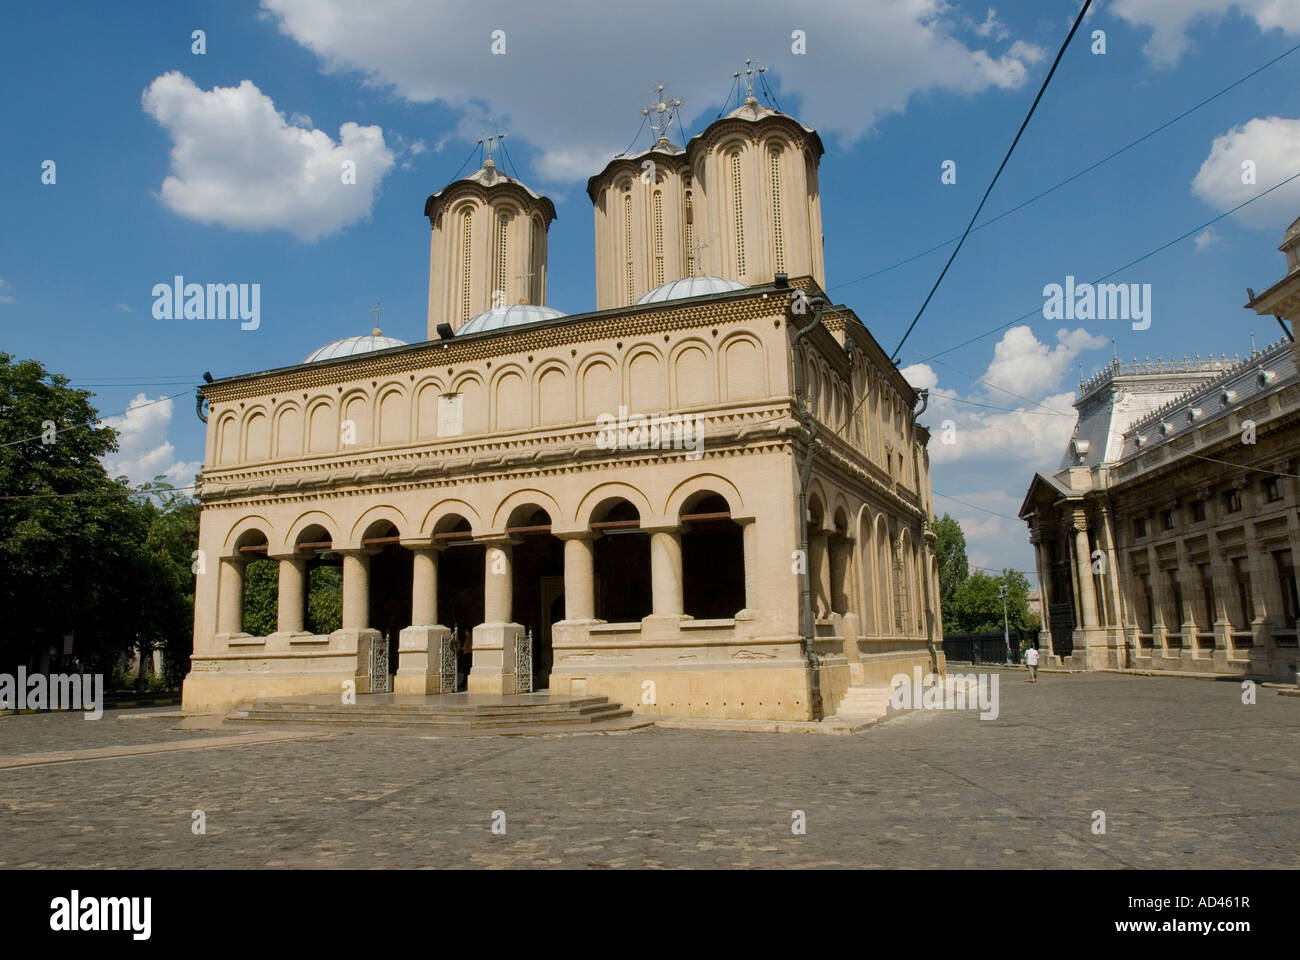 Catedrala Patriarhala, Bucharest, Romania Stock Photo - Alamy